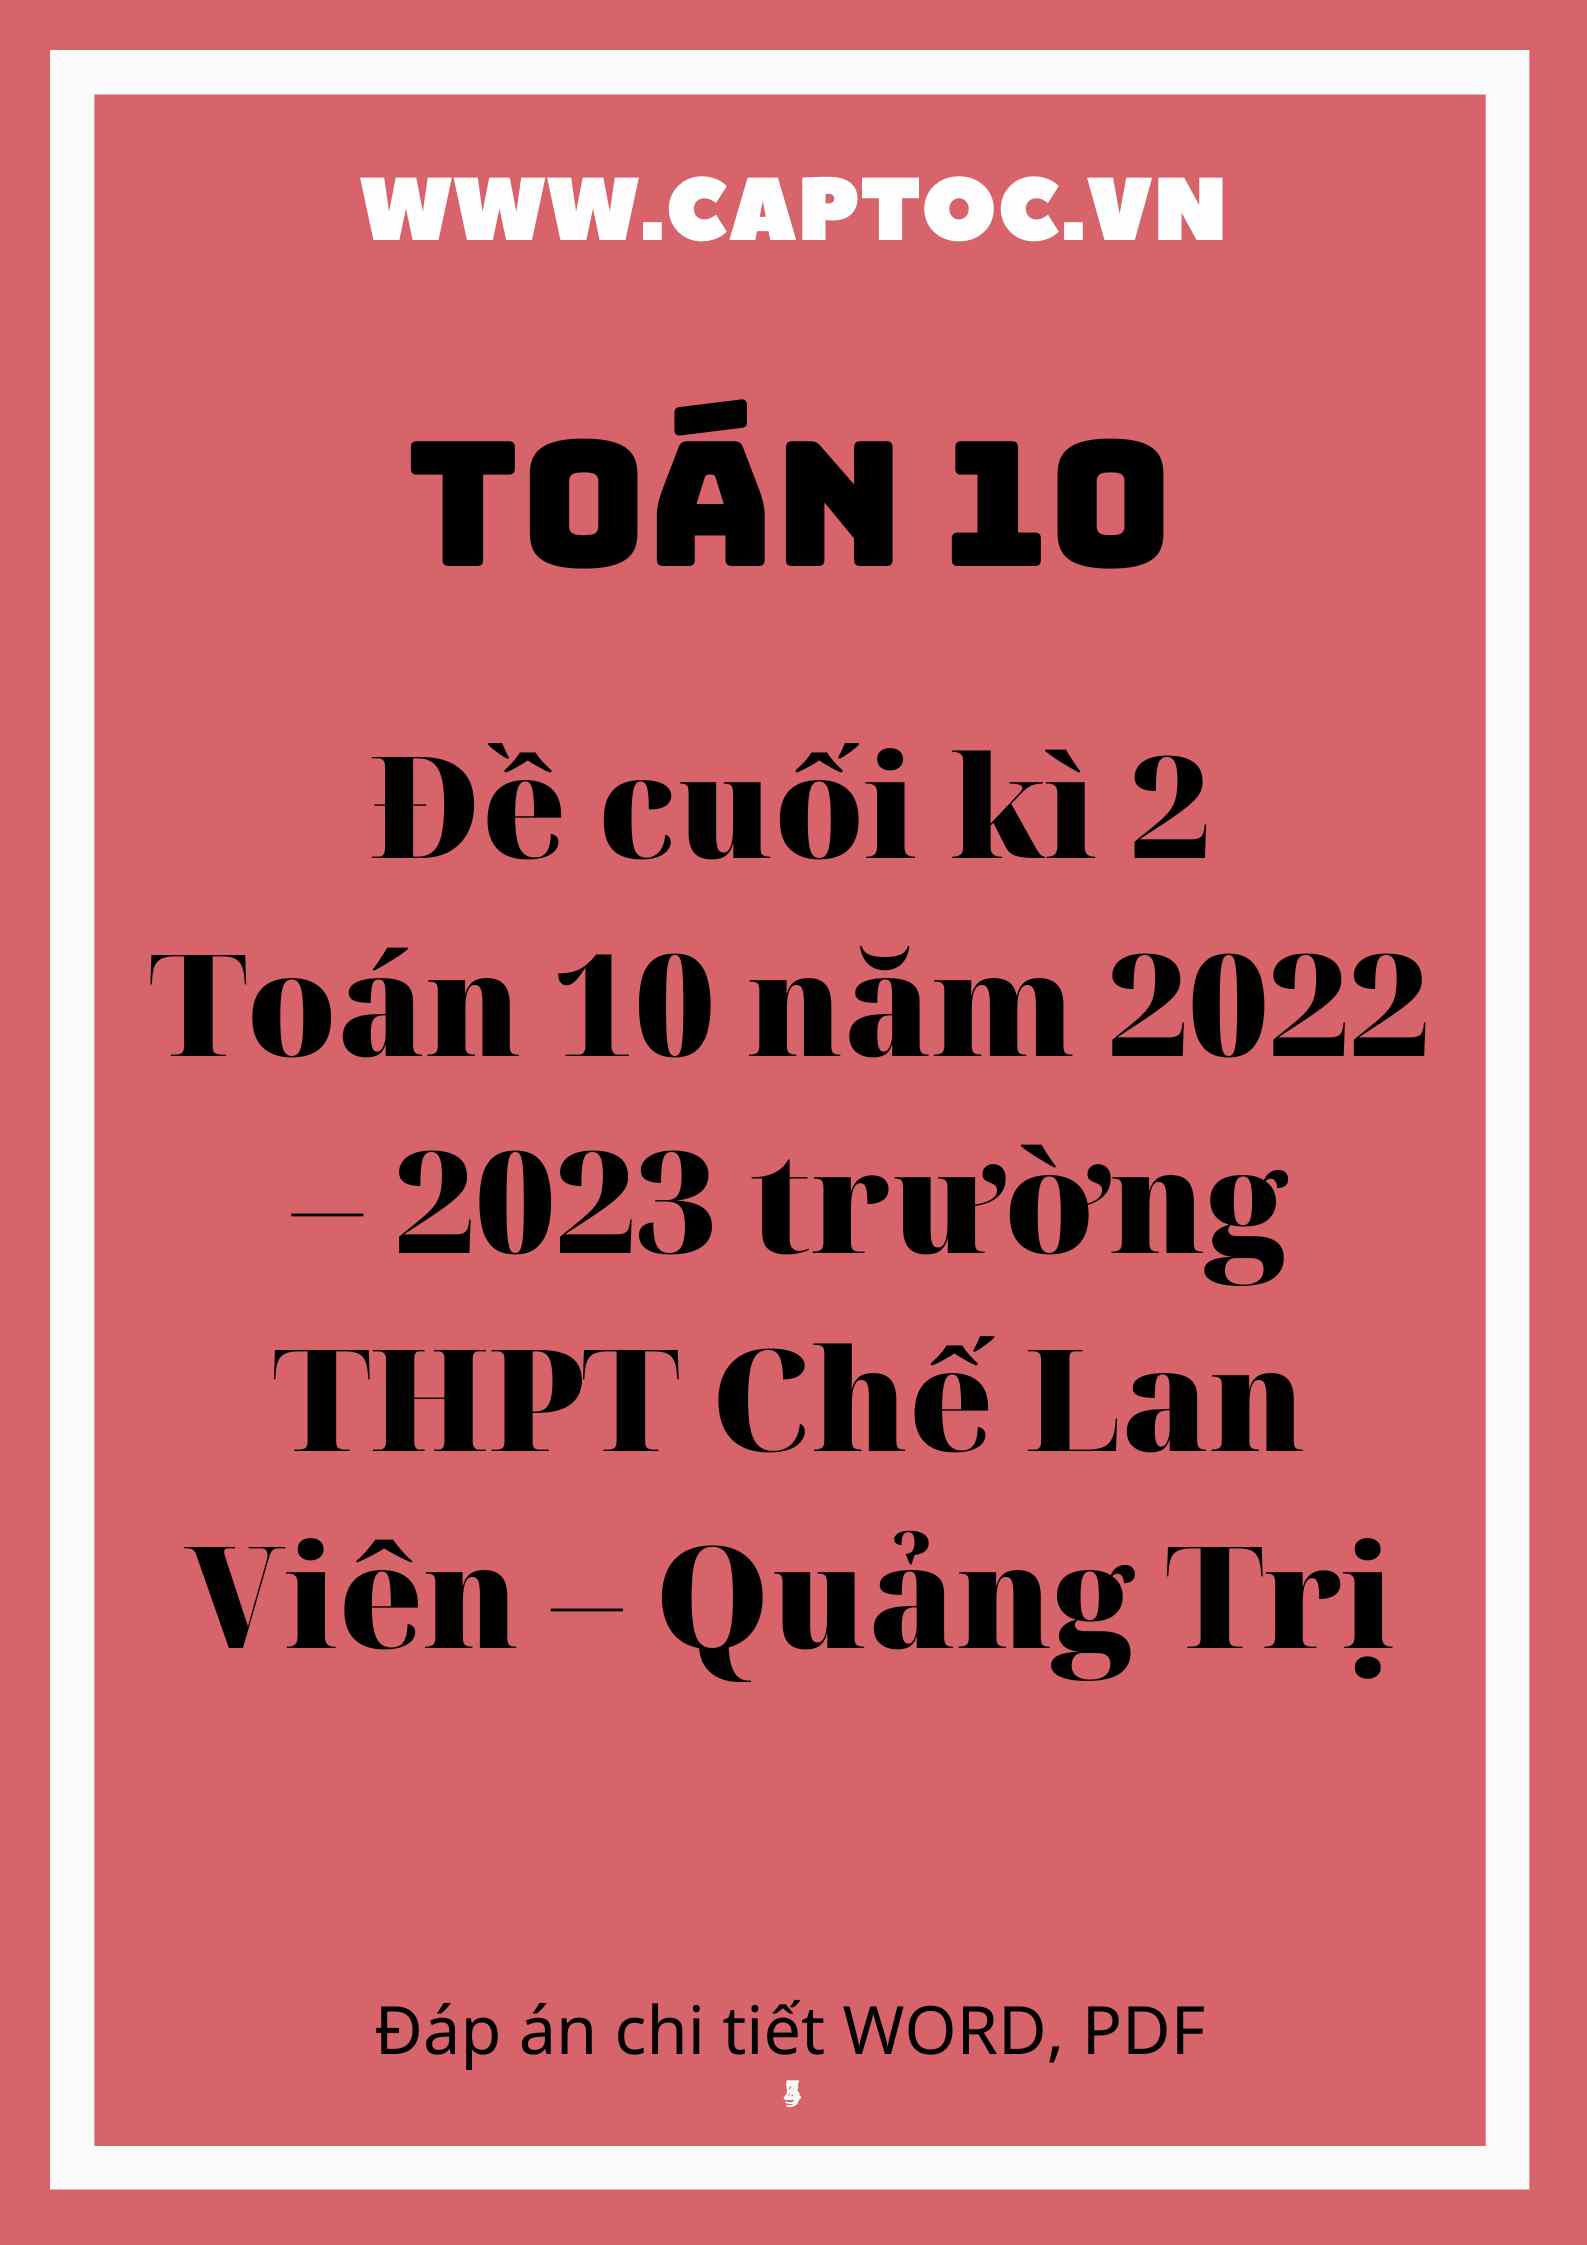 Đề cuối kì 2 Toán 10 năm 2022 – 2023 trường THPT Chế Lan Viên – Quảng Trị